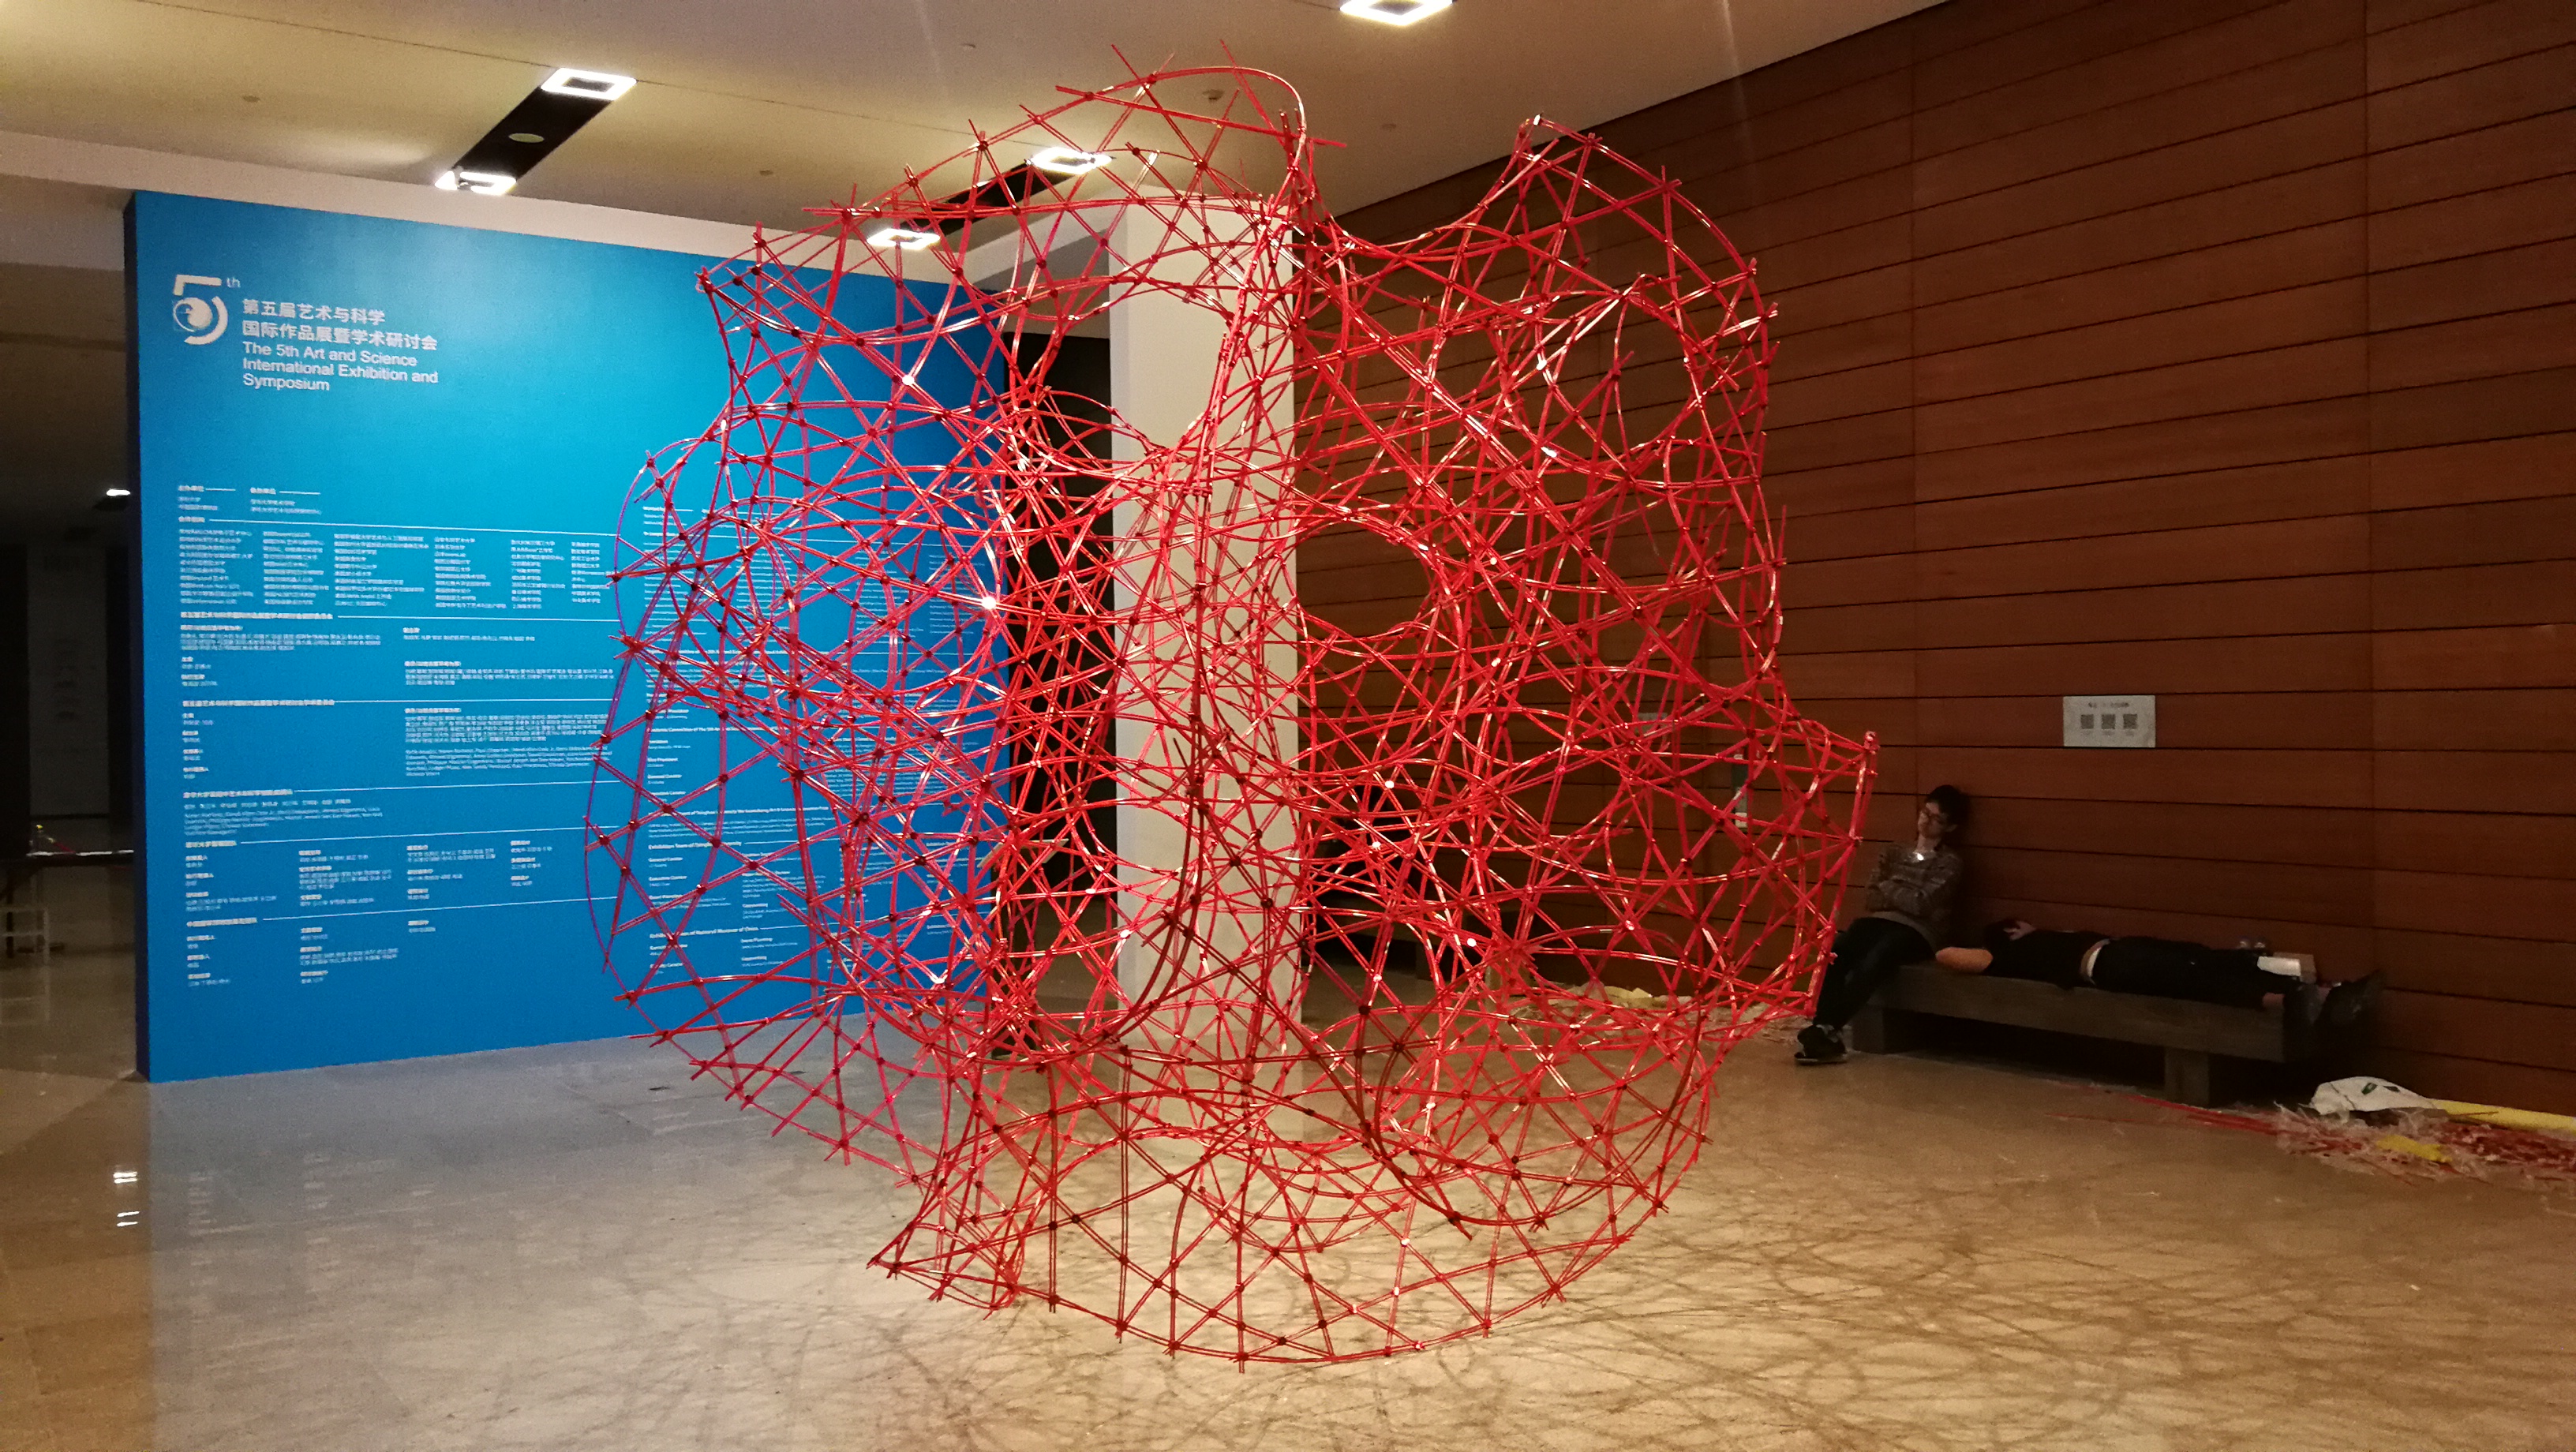 我校与清华大学联合作品《3D编织中国结》在国家博物馆展出